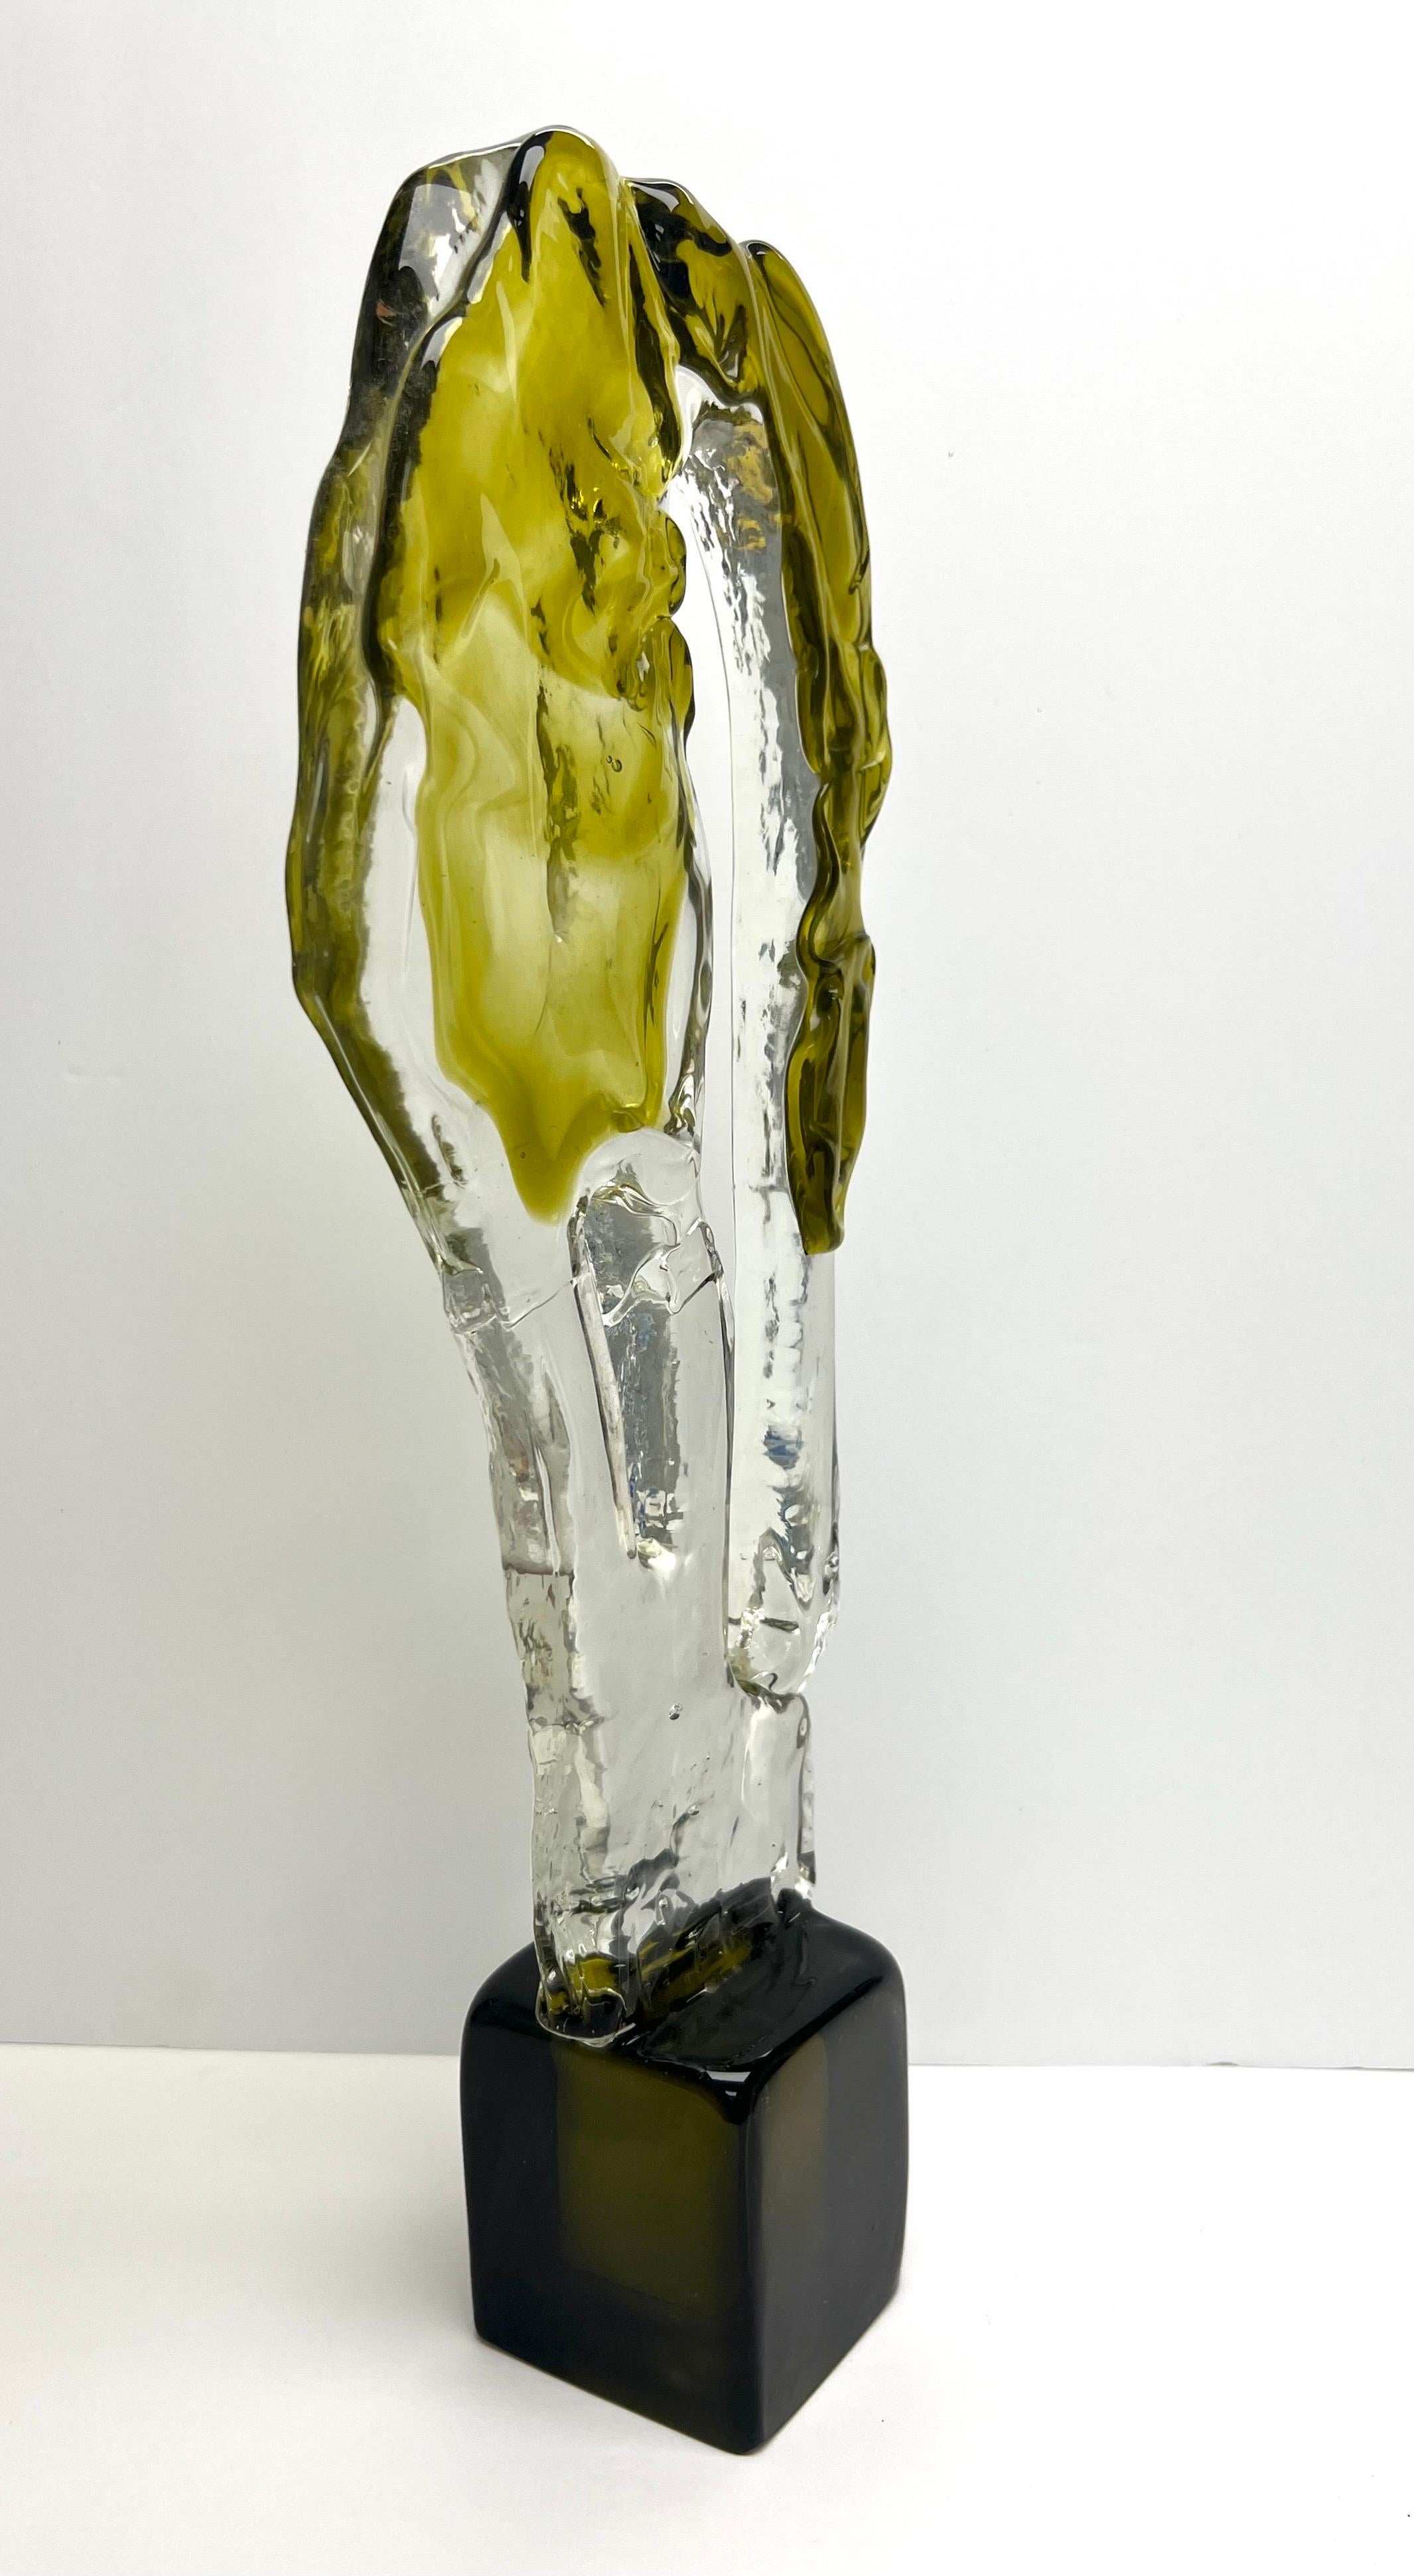 Italian Luciano Gaspari for Salviati Murano Art Glass Sculpture, 1970s For Sale